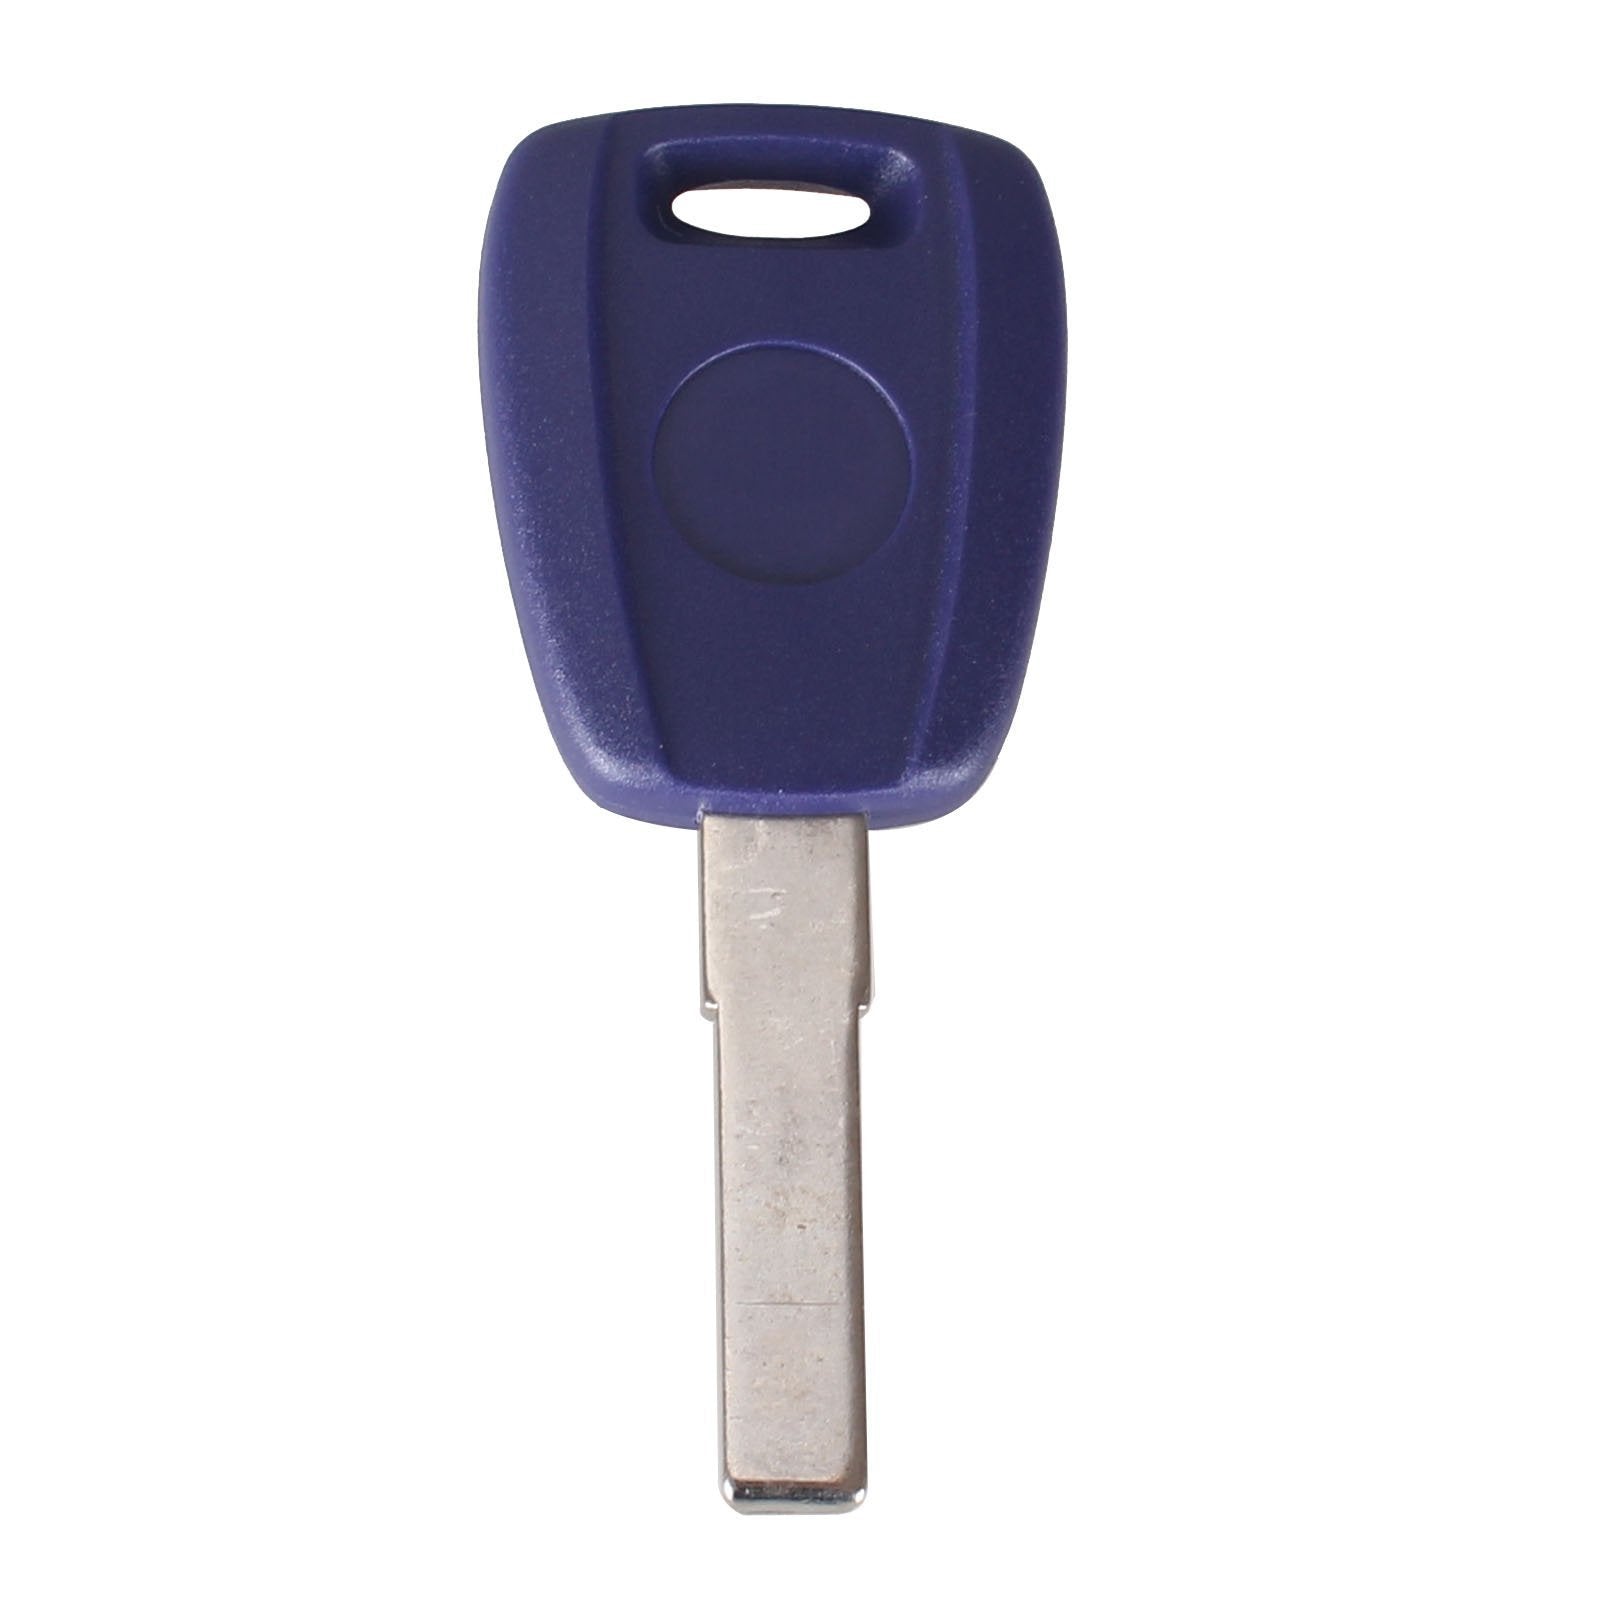 Kék színű Fiat kulcs, kulcsház SIP22 kulcsszárral.